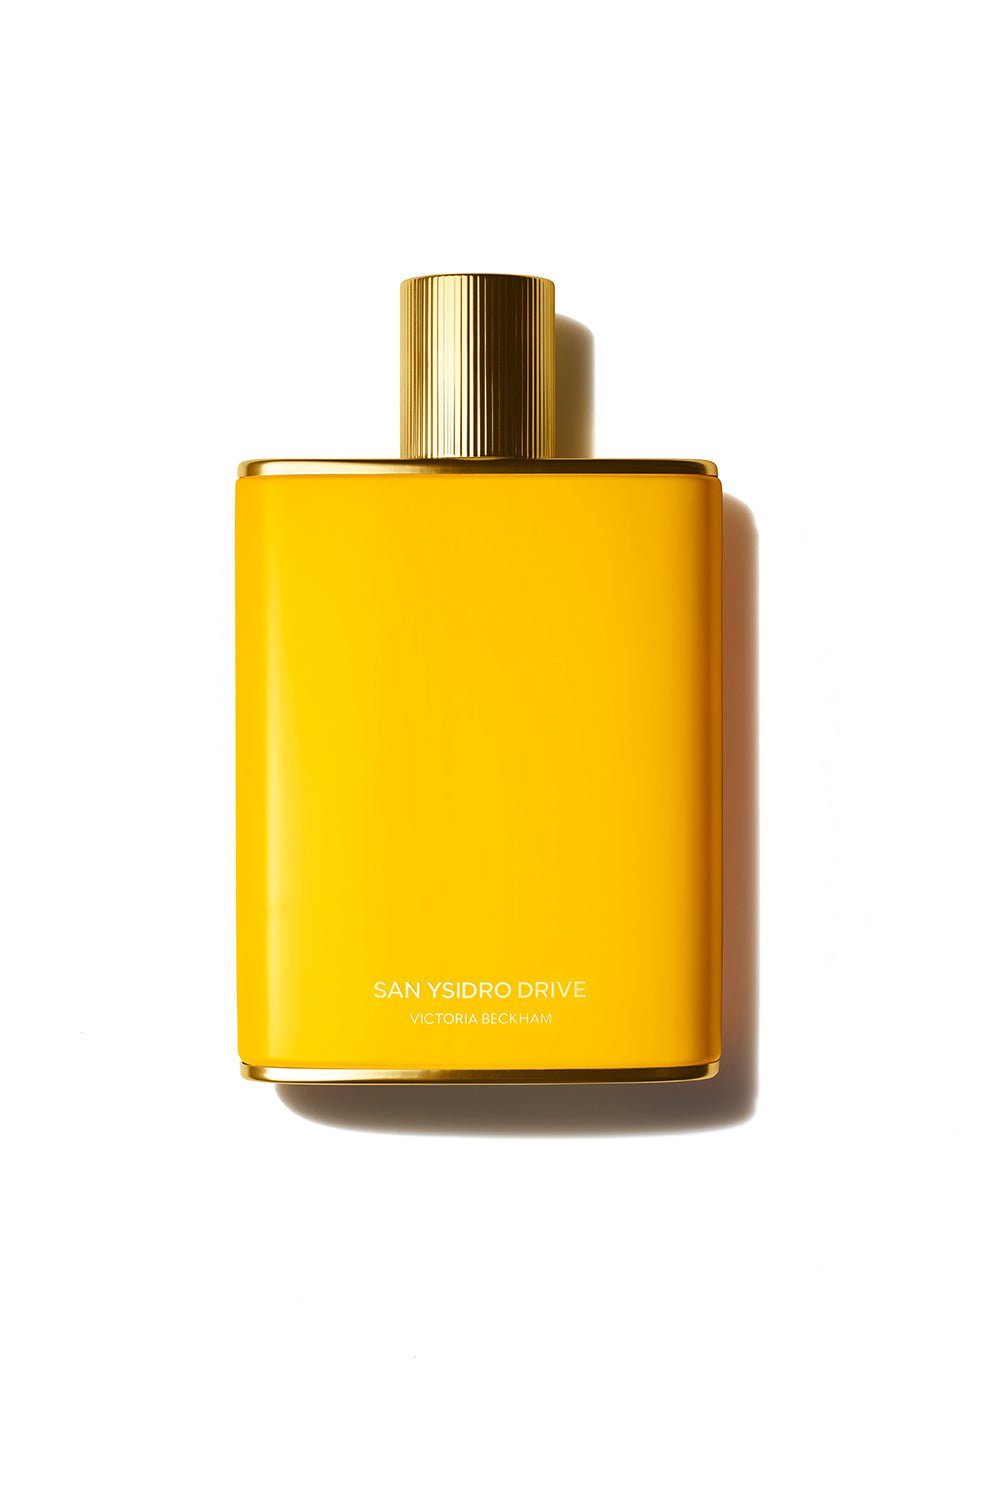 VICTORIA BECKHAM FRAGRANCE-San Ysidro Drive Eau de Parfum - 100ML-100 ML